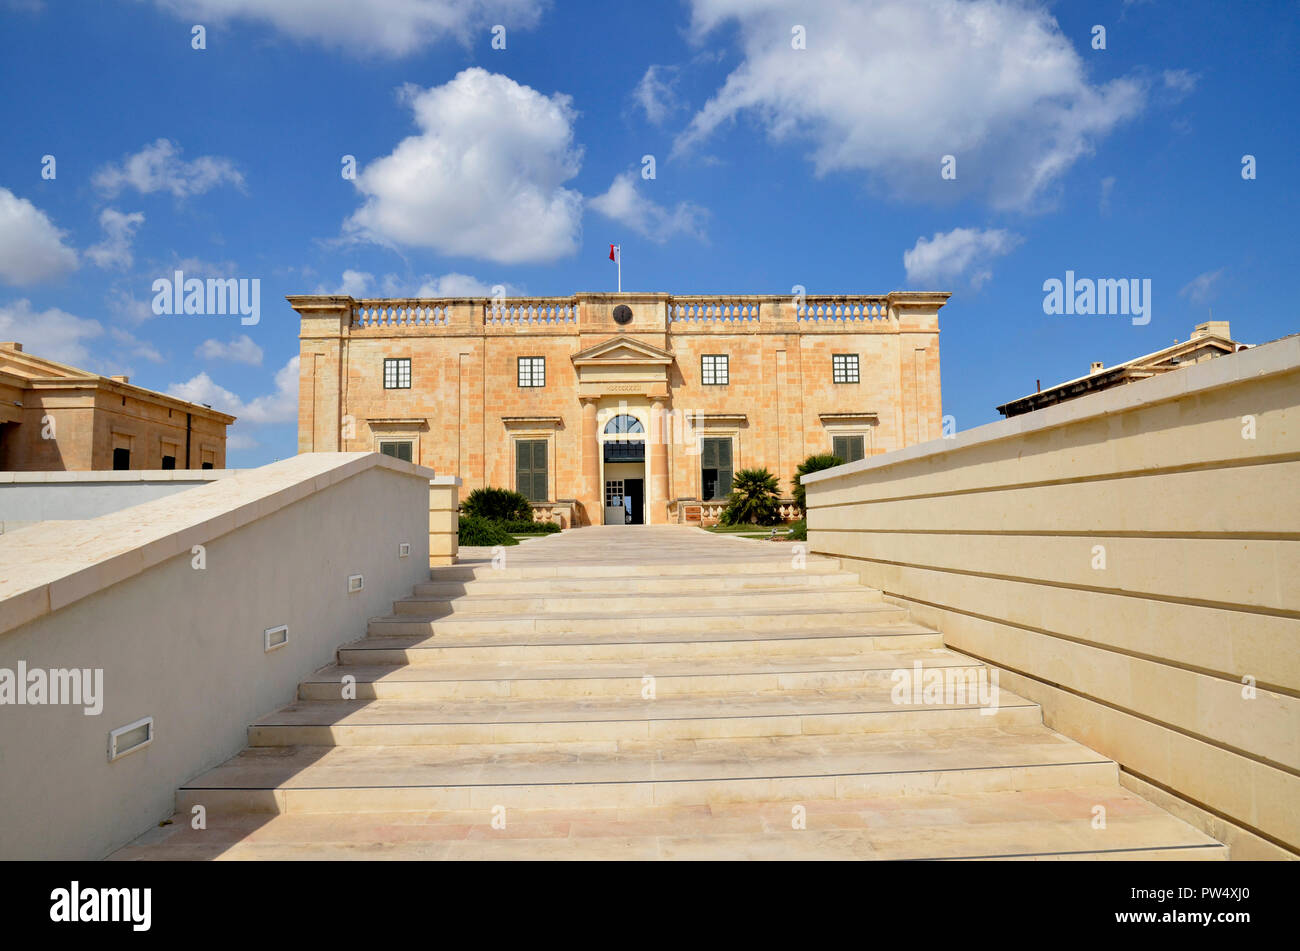 Villa Bighi at the Maltese interactive science museum of Esplora. Stock Photo